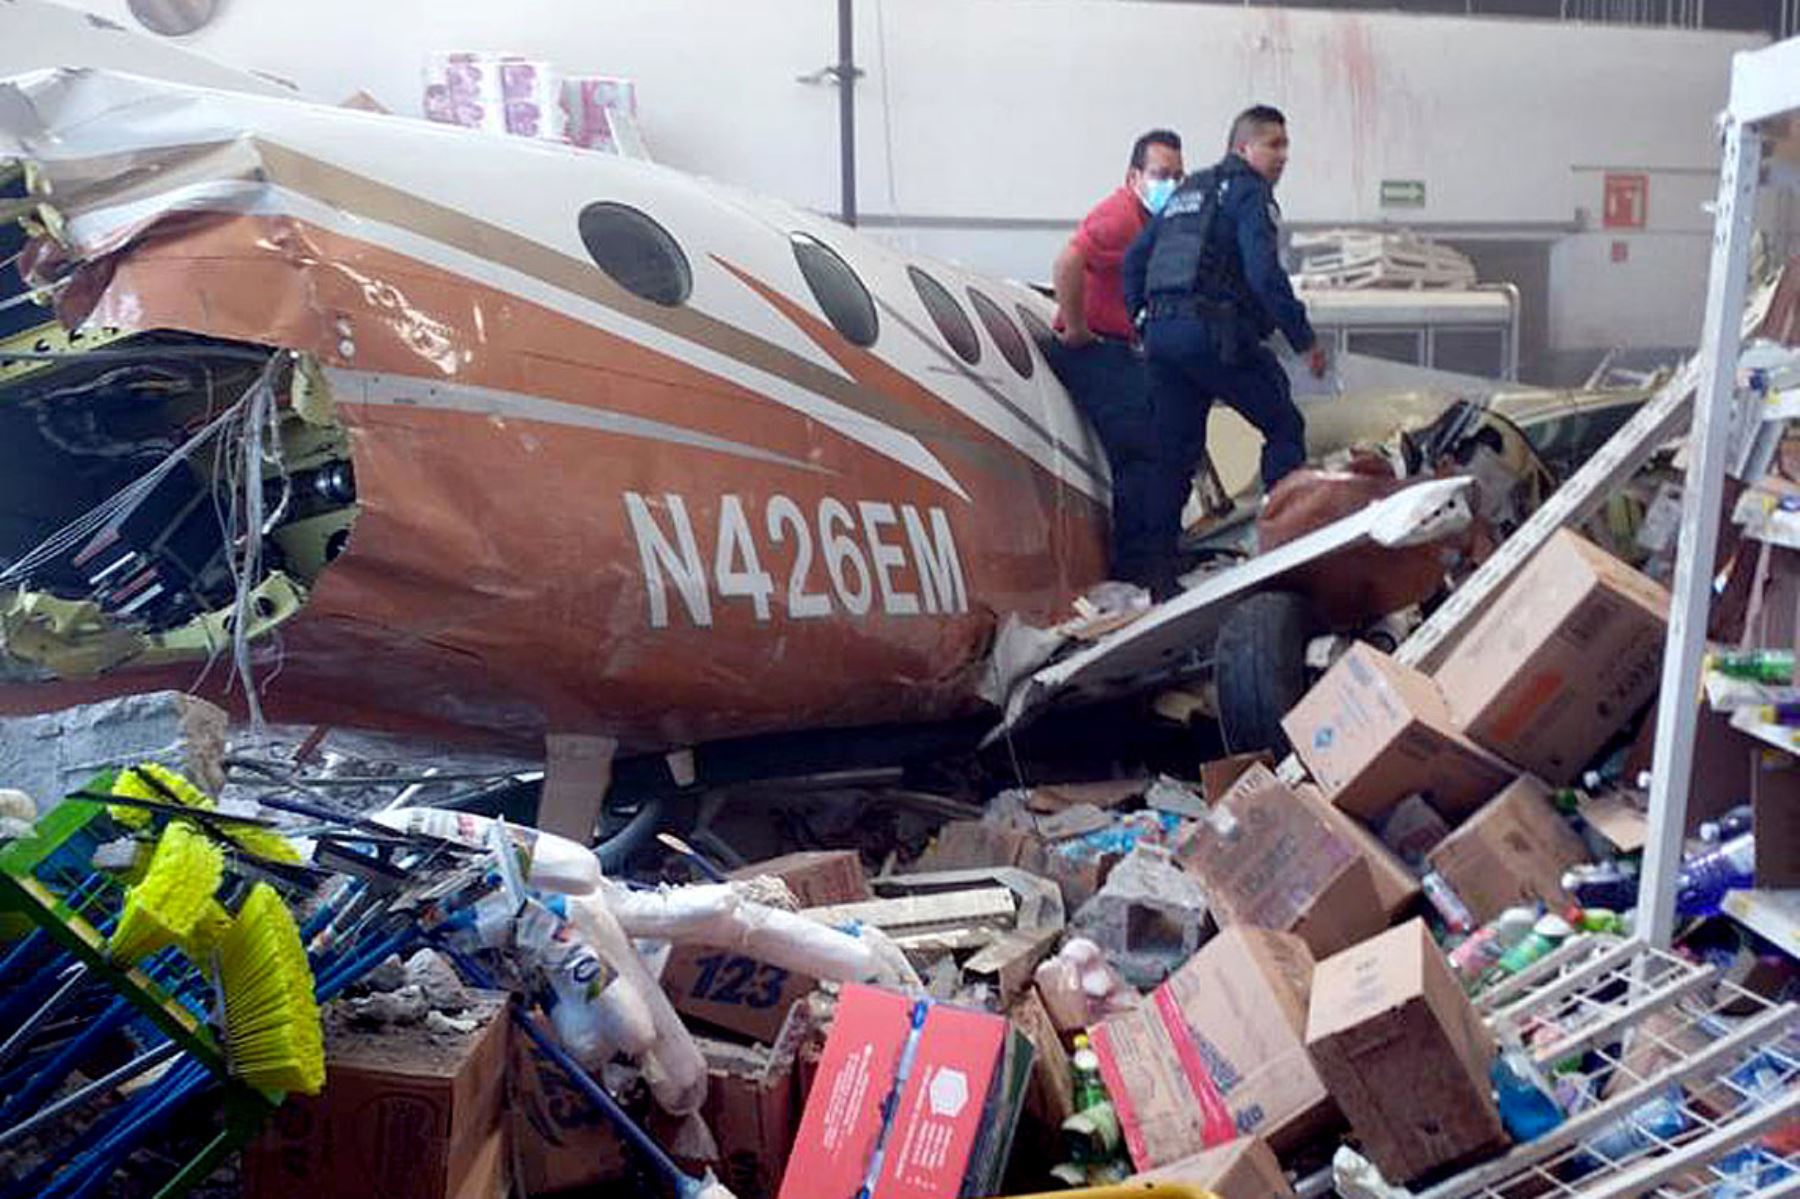 Fotografía cedida por Protección Civil de Morelos, de una avioneta que impactó en una tienda de autoservicio hoy, en el municipio de Temixco, estado de Morelos (México). Foto: EFE